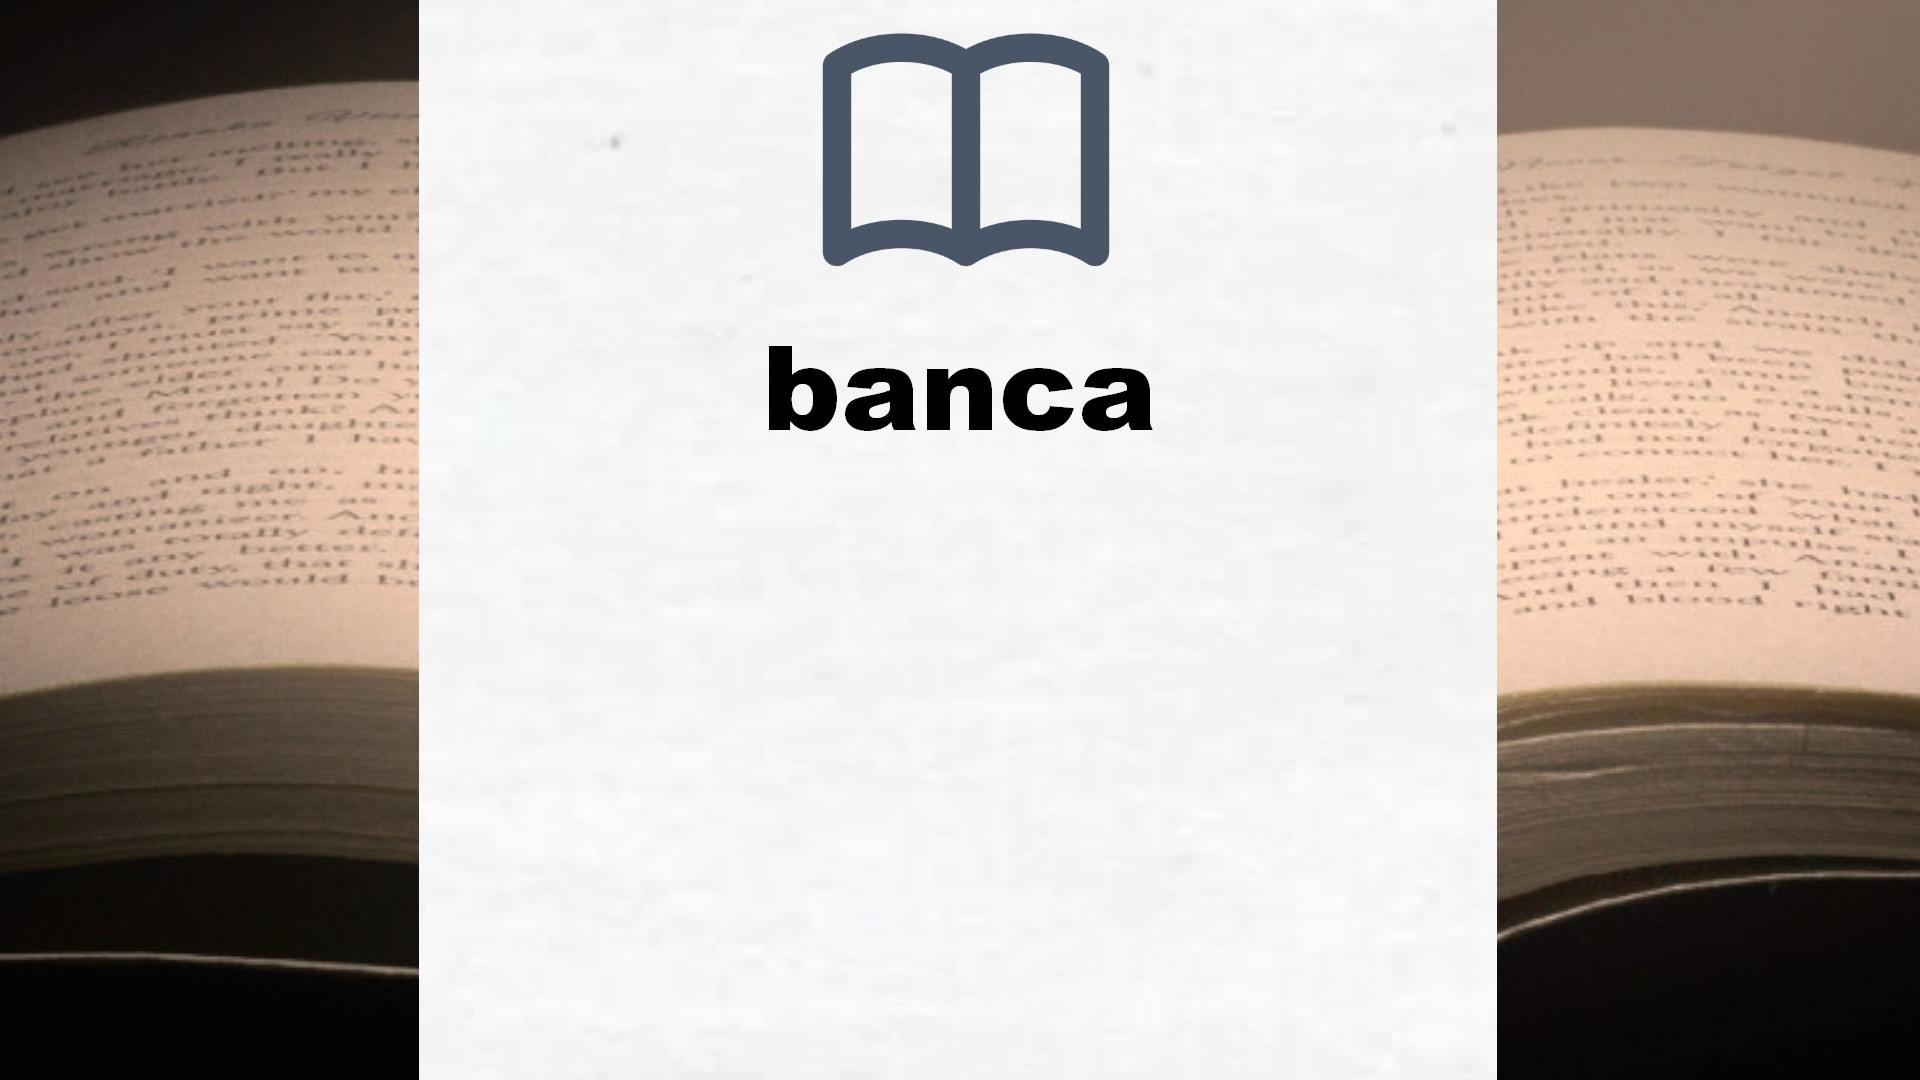 Libros sobre banca